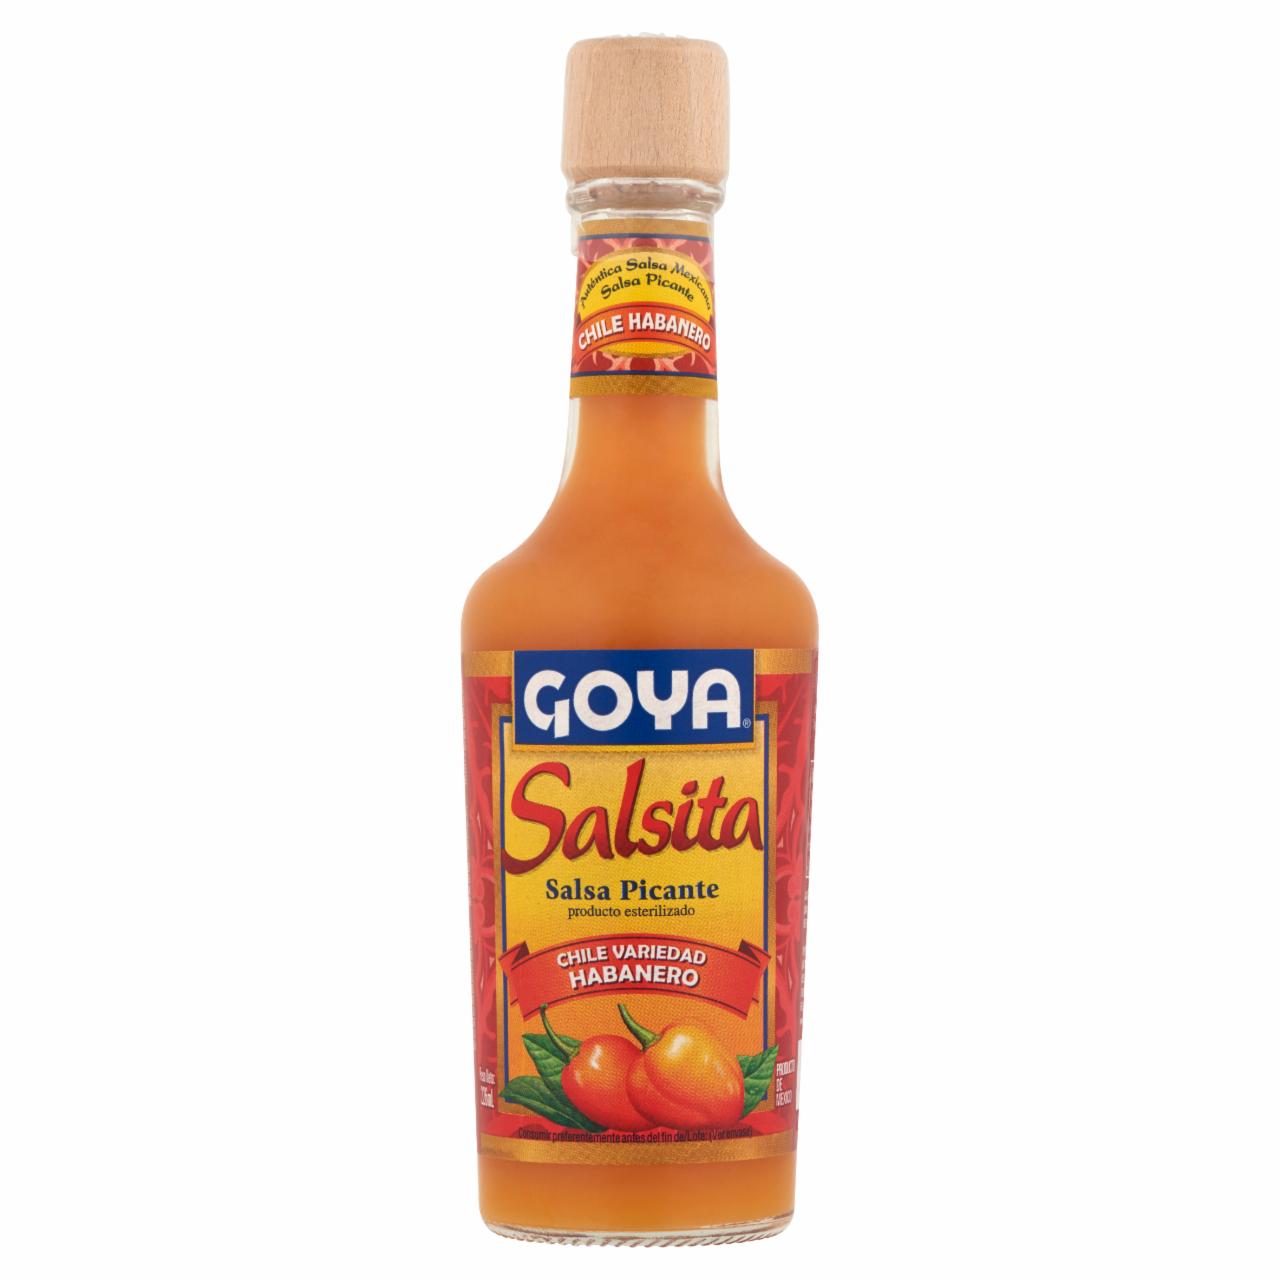 Képek - Goya Salsita fűszeres csípős szósz Habanero chili paprikából 226 ml